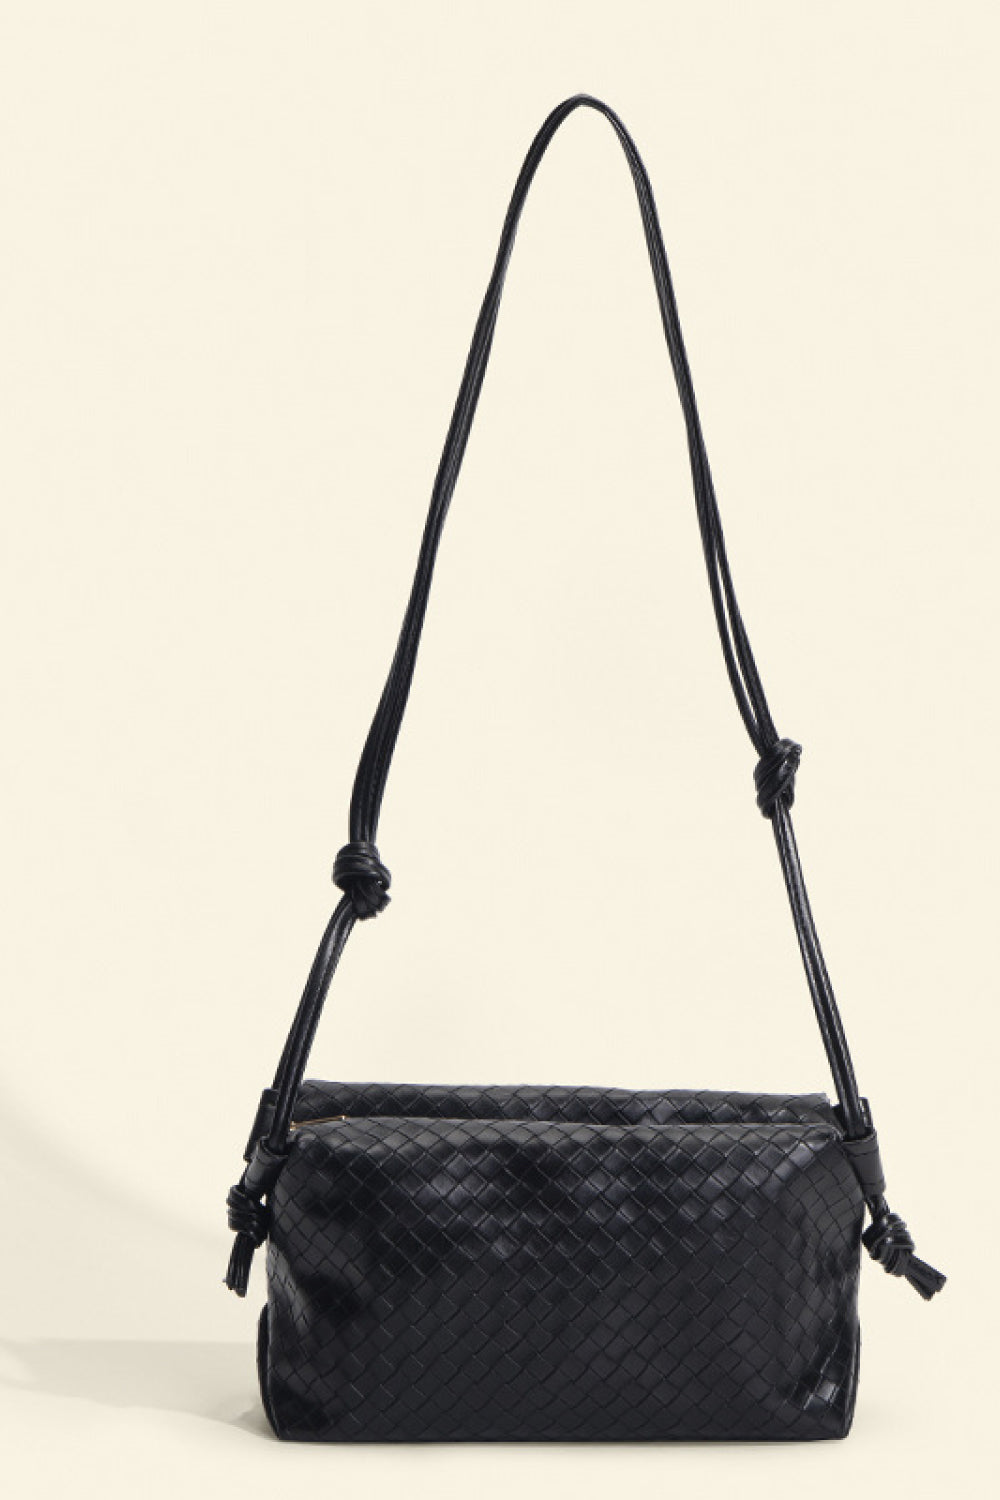 PU Leather Knot Detail Shoulder Bag Black One Size